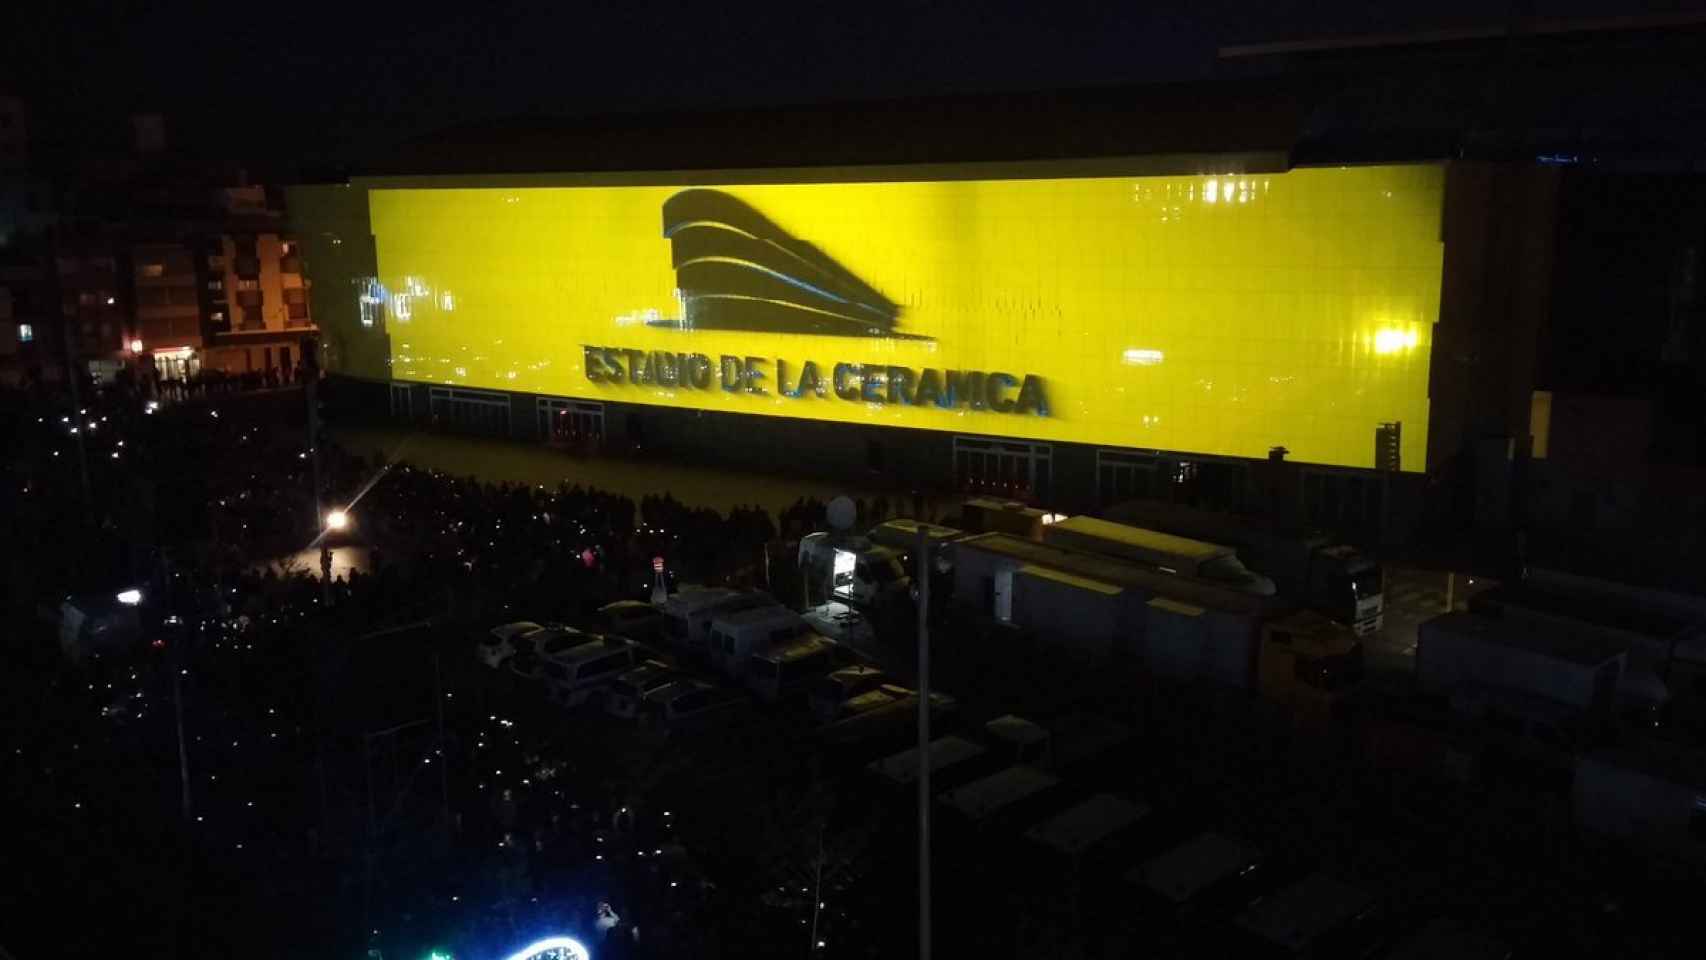 Estadio de la Cerámica.